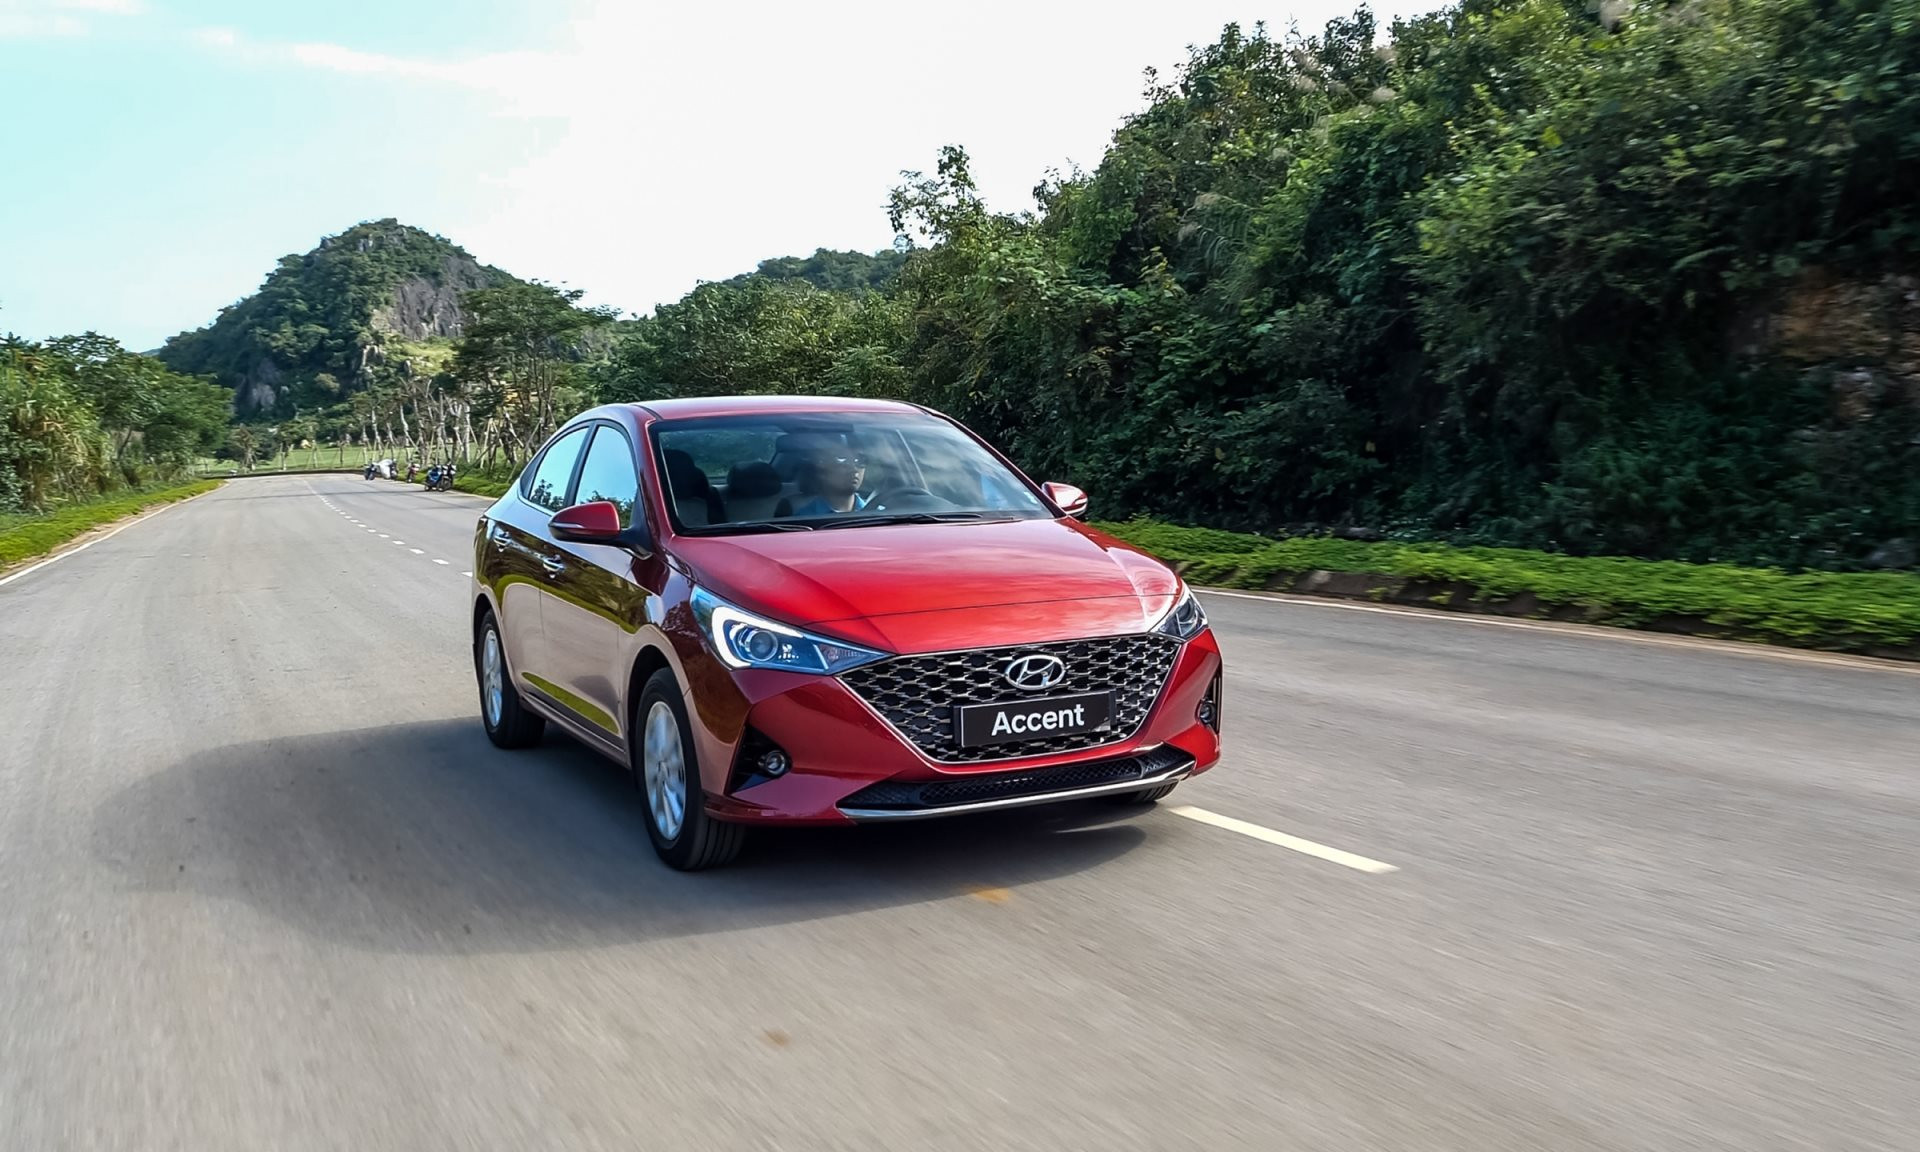 Hyundai Accent ‘tách top’, bỏ xa đối thủ ở phân khúc sedan hạng B - Ảnh 1.